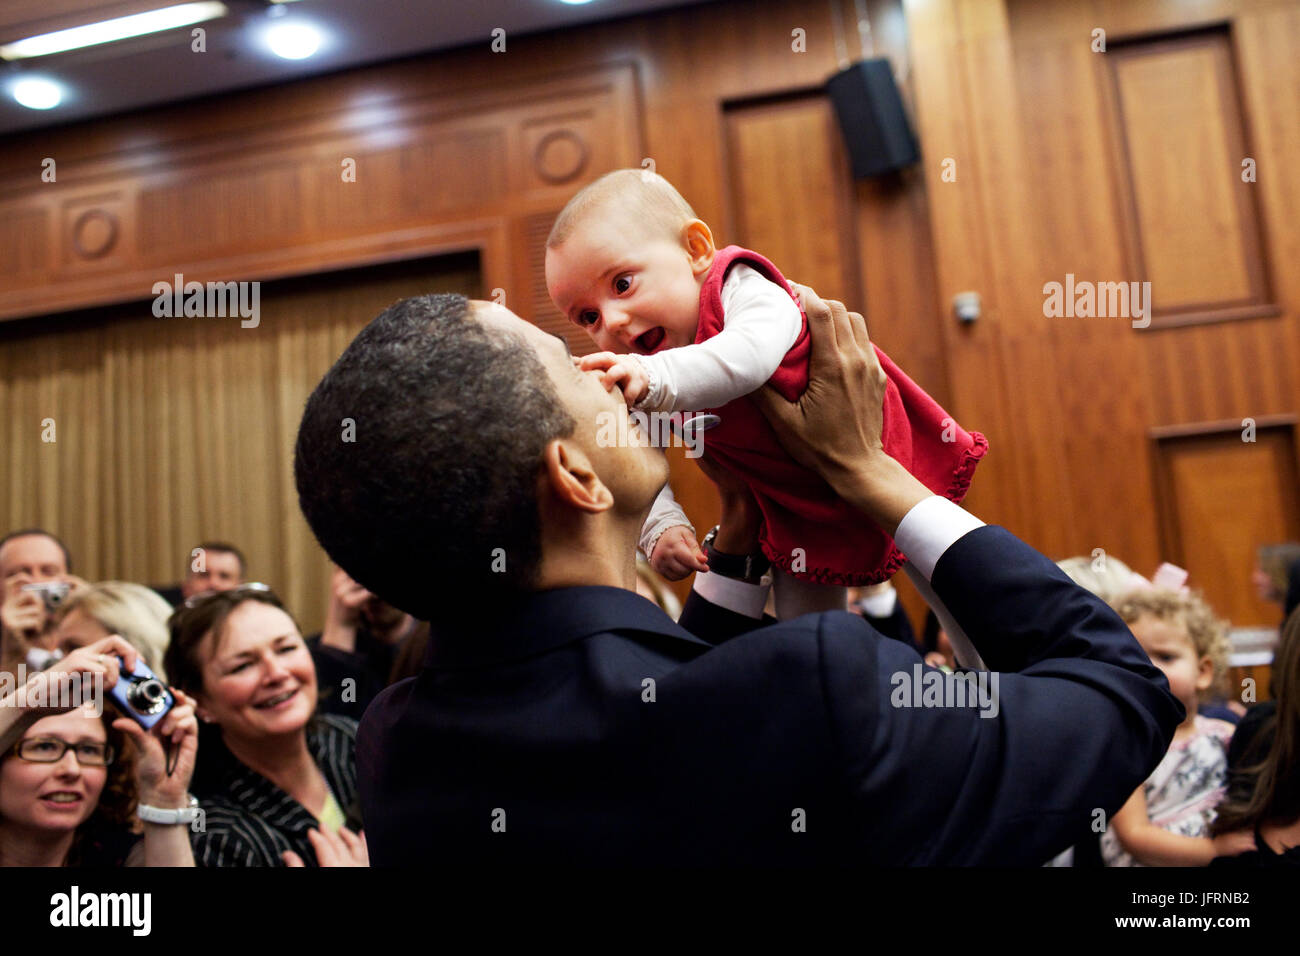 Le président Obama se soulève un bébé le 4 avril 2009, lors de l'ambassade des États-Unis à un message d'accueil de l'hôtel de Prague. Photo Officiel de la Maison Blanche par Pete Souza Banque D'Images